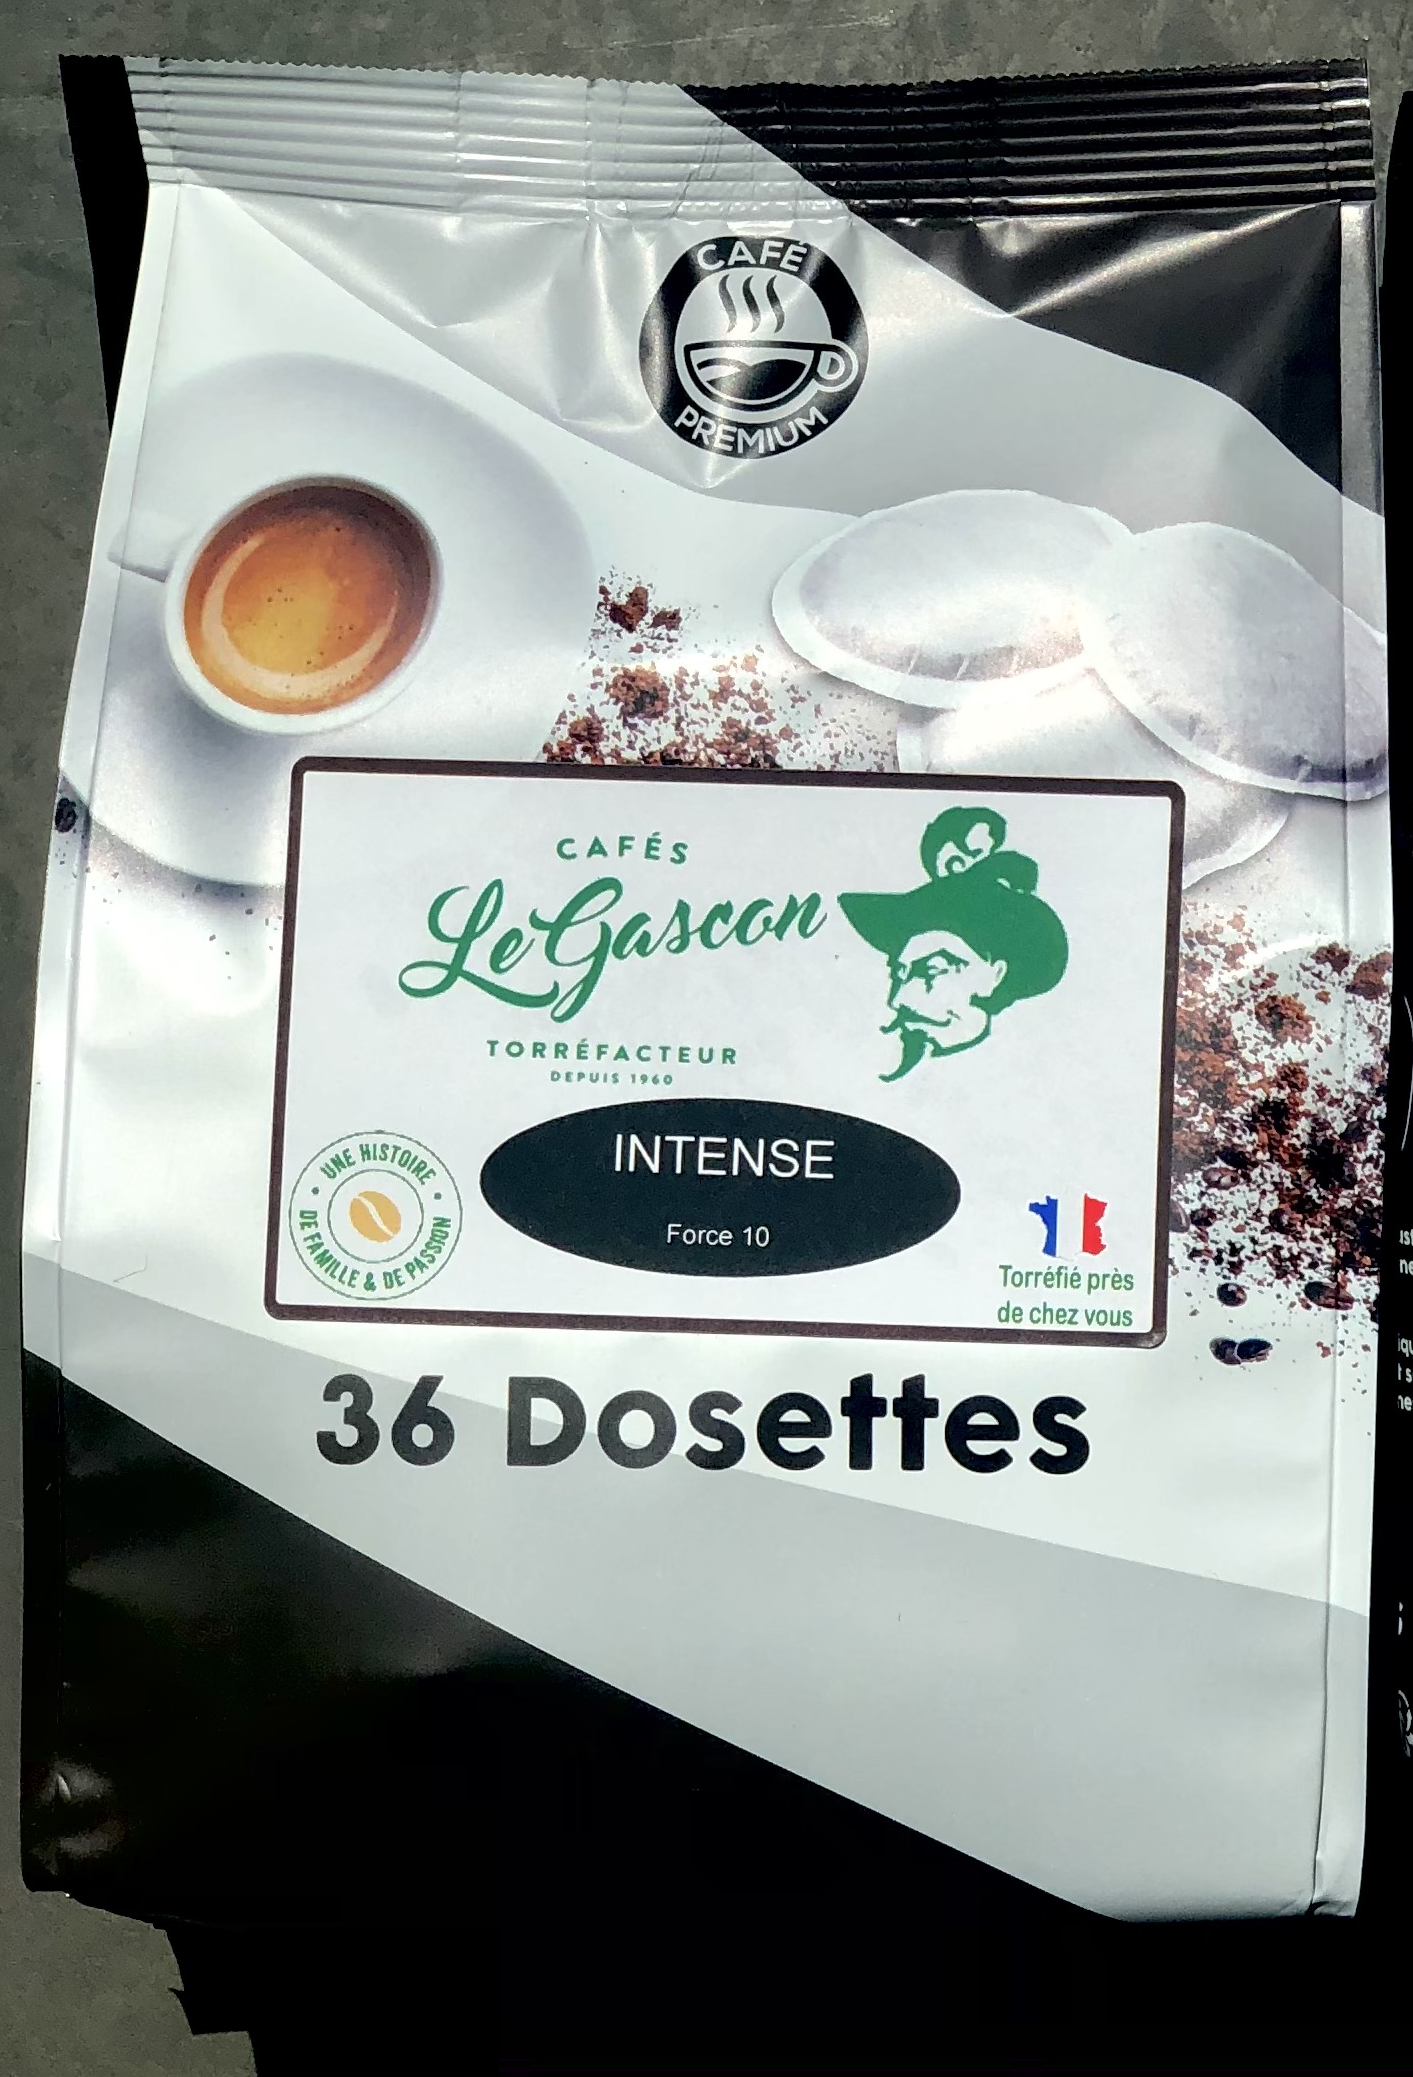 Café dosettes aromatisés noisettes compatible Senseo, U (x 10)